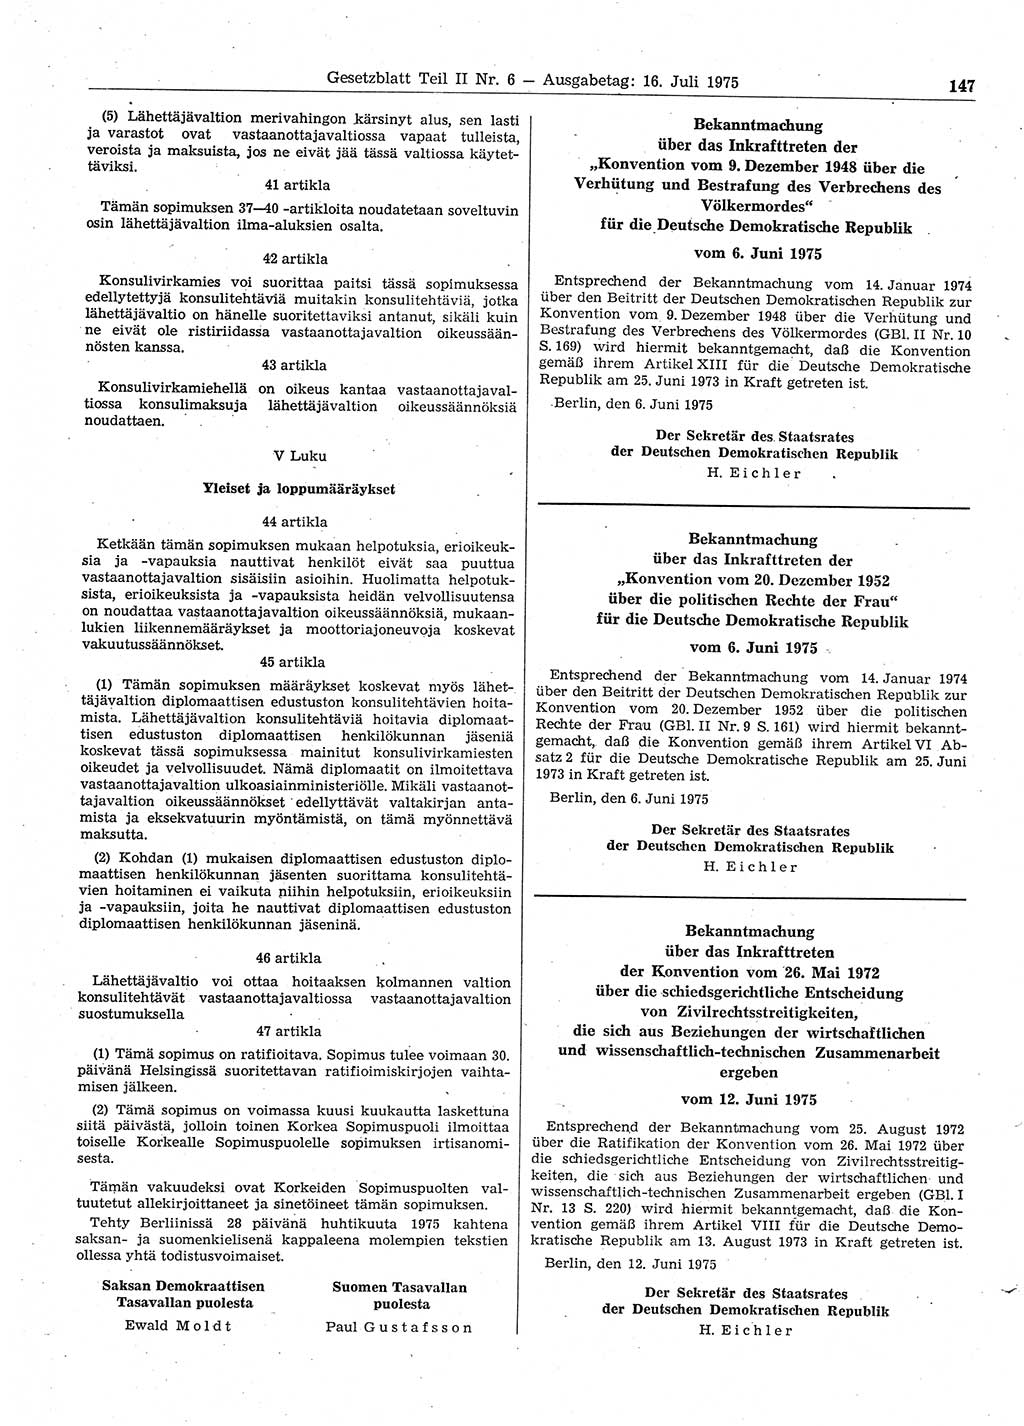 Gesetzblatt (GBl.) der Deutschen Demokratischen Republik (DDR) Teil ⅠⅠ 1975, Seite 147 (GBl. DDR ⅠⅠ 1975, S. 147)